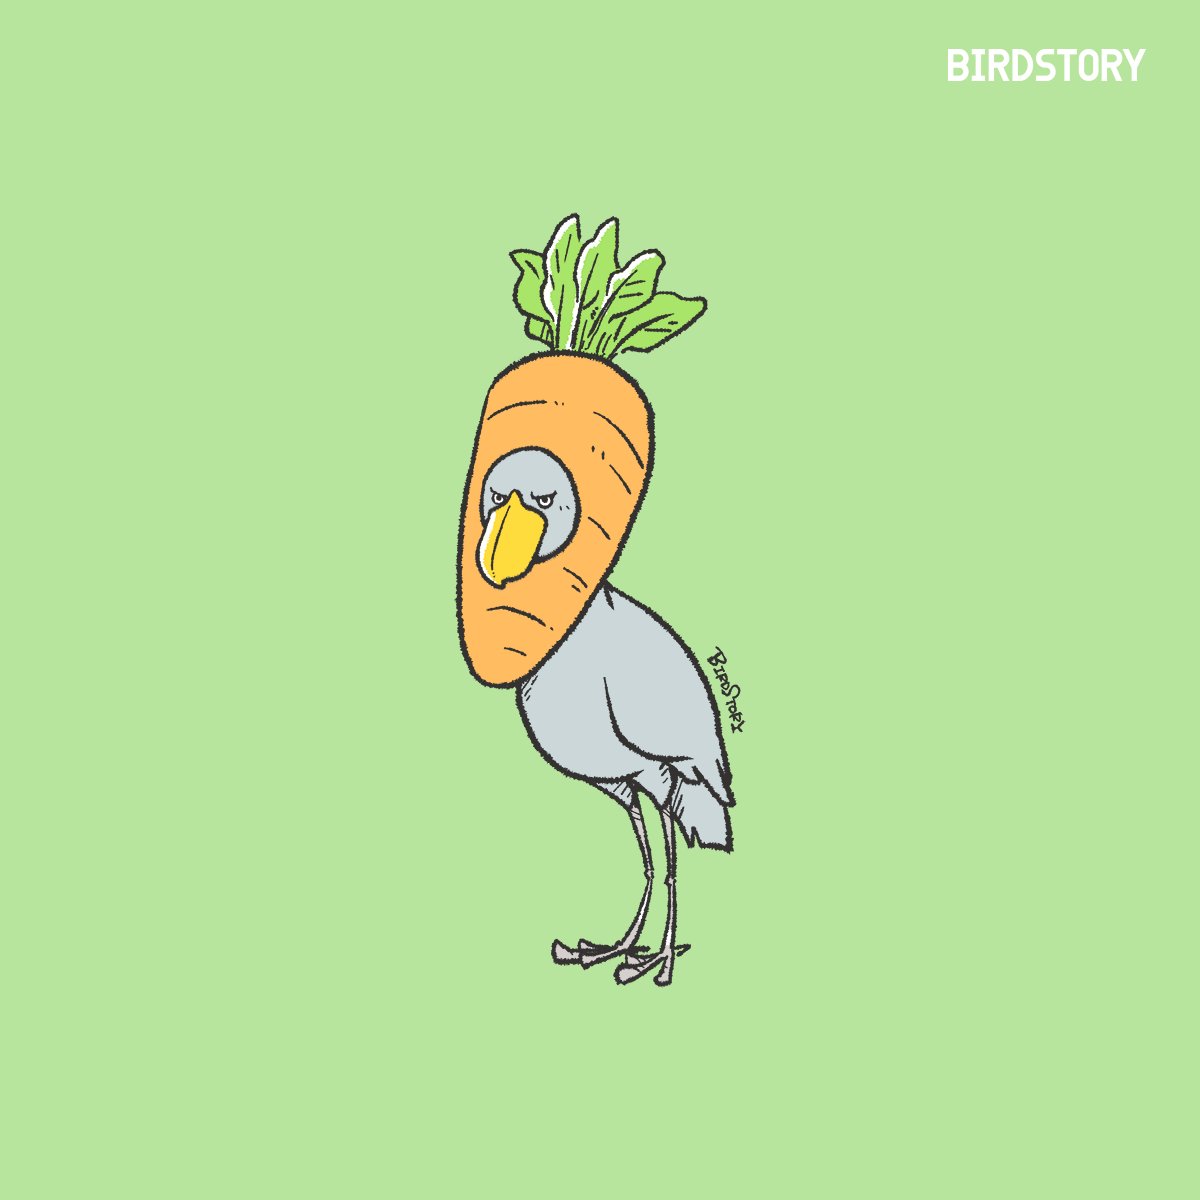 「おはようございます。 本日は8月31日、語呂合わせから、野菜の日とのことです #」|BIRDSTORYのイラスト